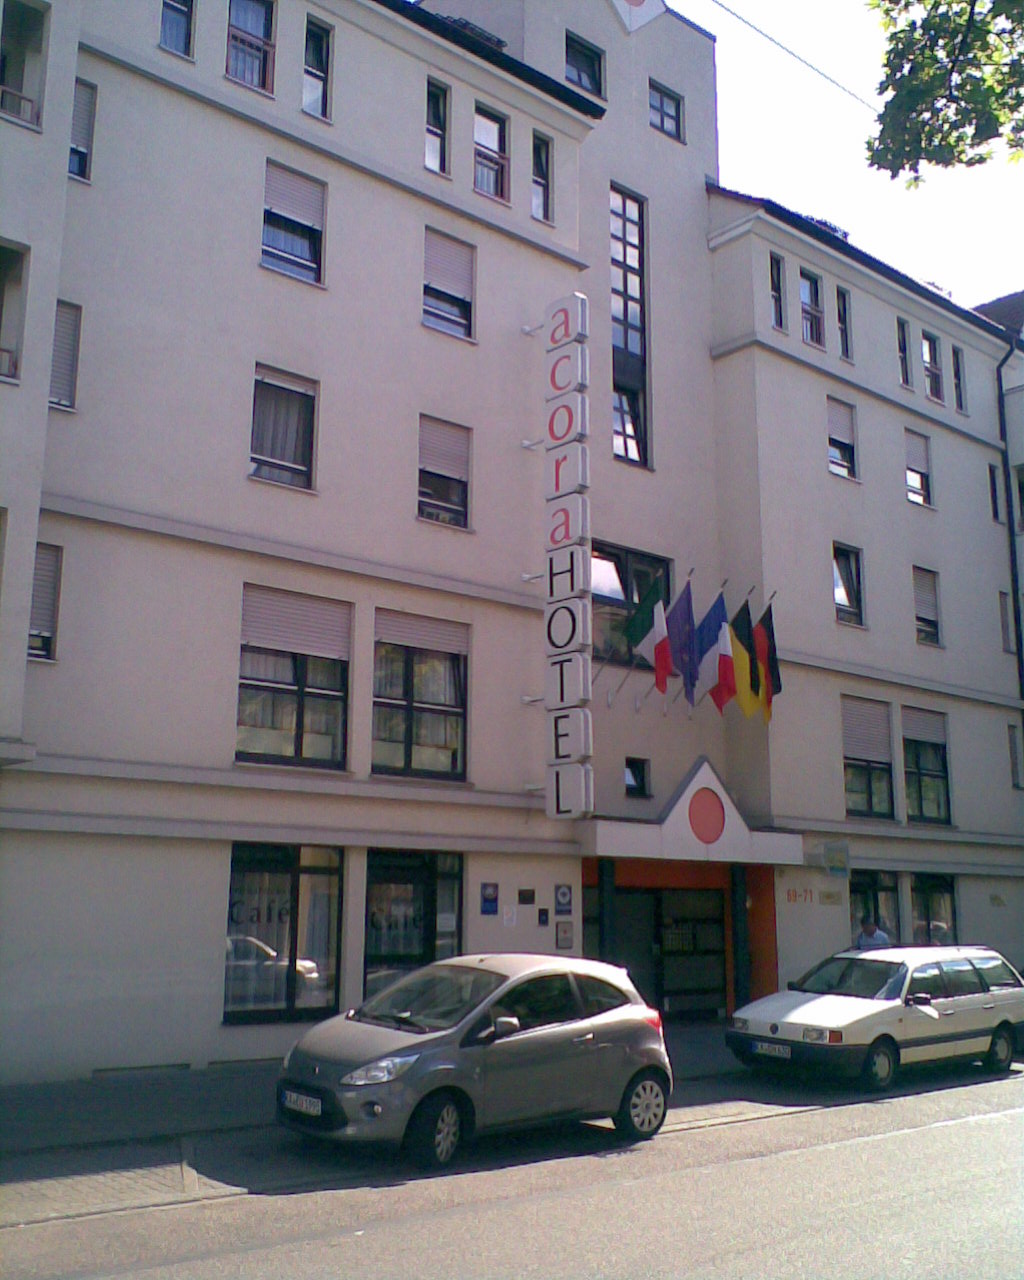 Bild 1 acora Hotel u. Wohnen GmbH in Karlsruhe